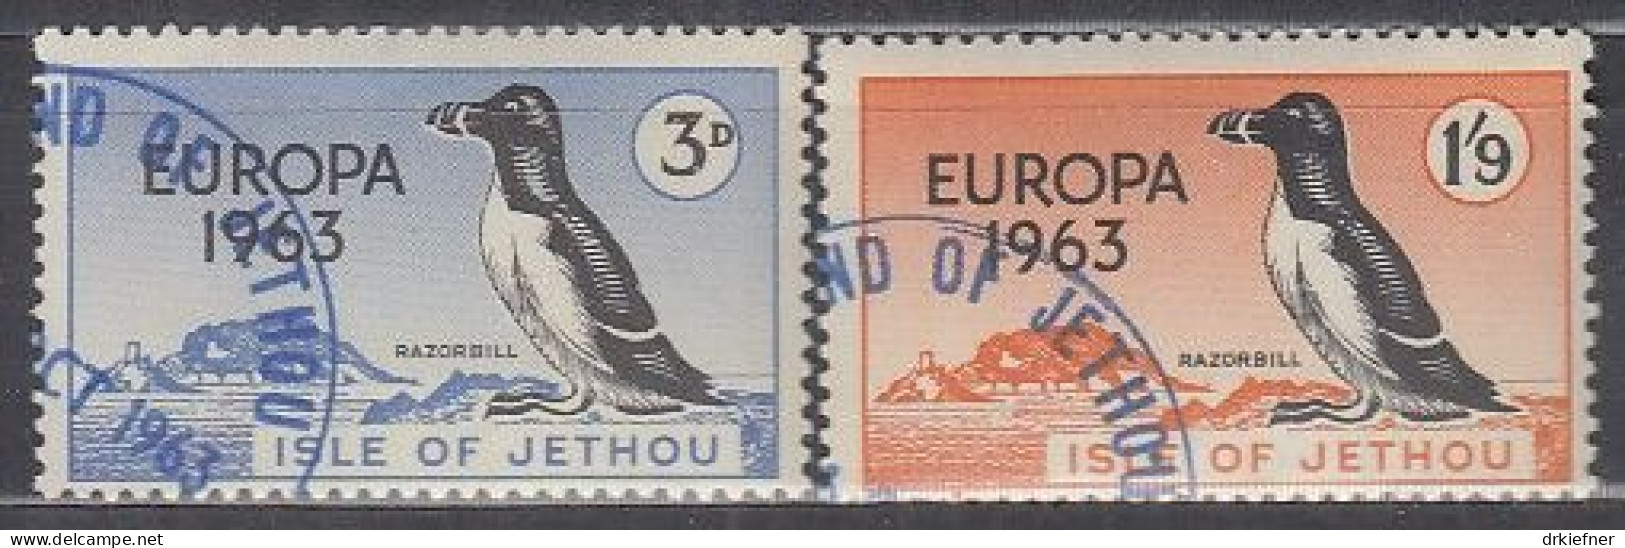 INSEL JETHOU (Guernsey), Nichtamtl. Briefmarken, 2 Marken, Gestempelt, Europa 1963, Vögel - Guernsey